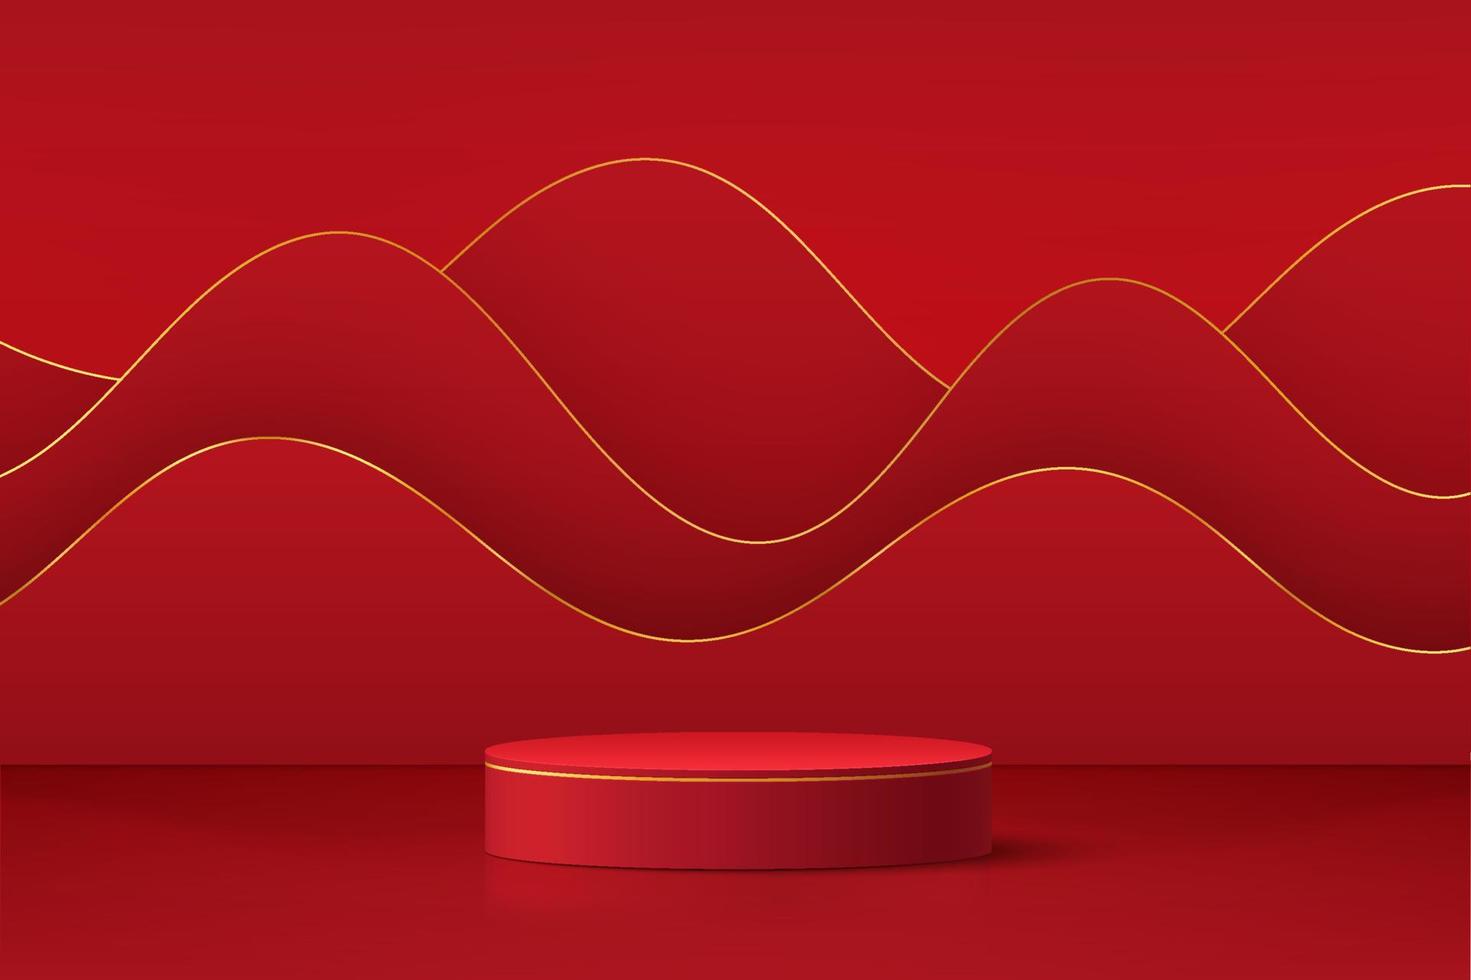 podium de piédestal de cylindre 3d rouge réaliste avec fond de forme ondulée de couches. scène minimale pour vitrine de produits, affichage de promotion. conception abstraite de plate-forme de salle de studio. concept de jour de lanterne heureux. vecteur